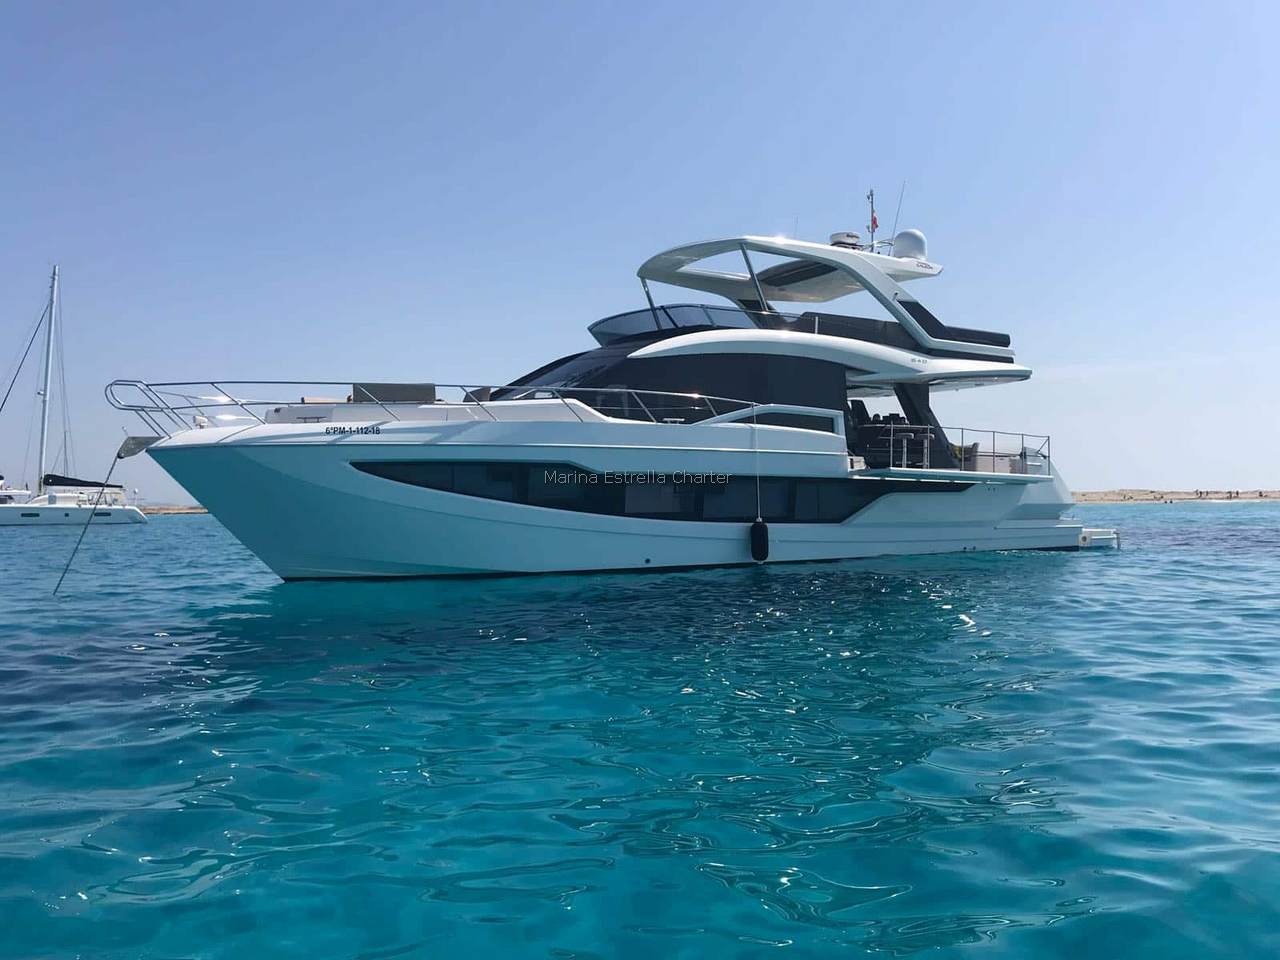 Barco de motor EN CHARTER, de la marca Galeon modelo 640 Fly y del año 2018, disponible en Port Esportiu Port Adriano Calvià Mallorca España